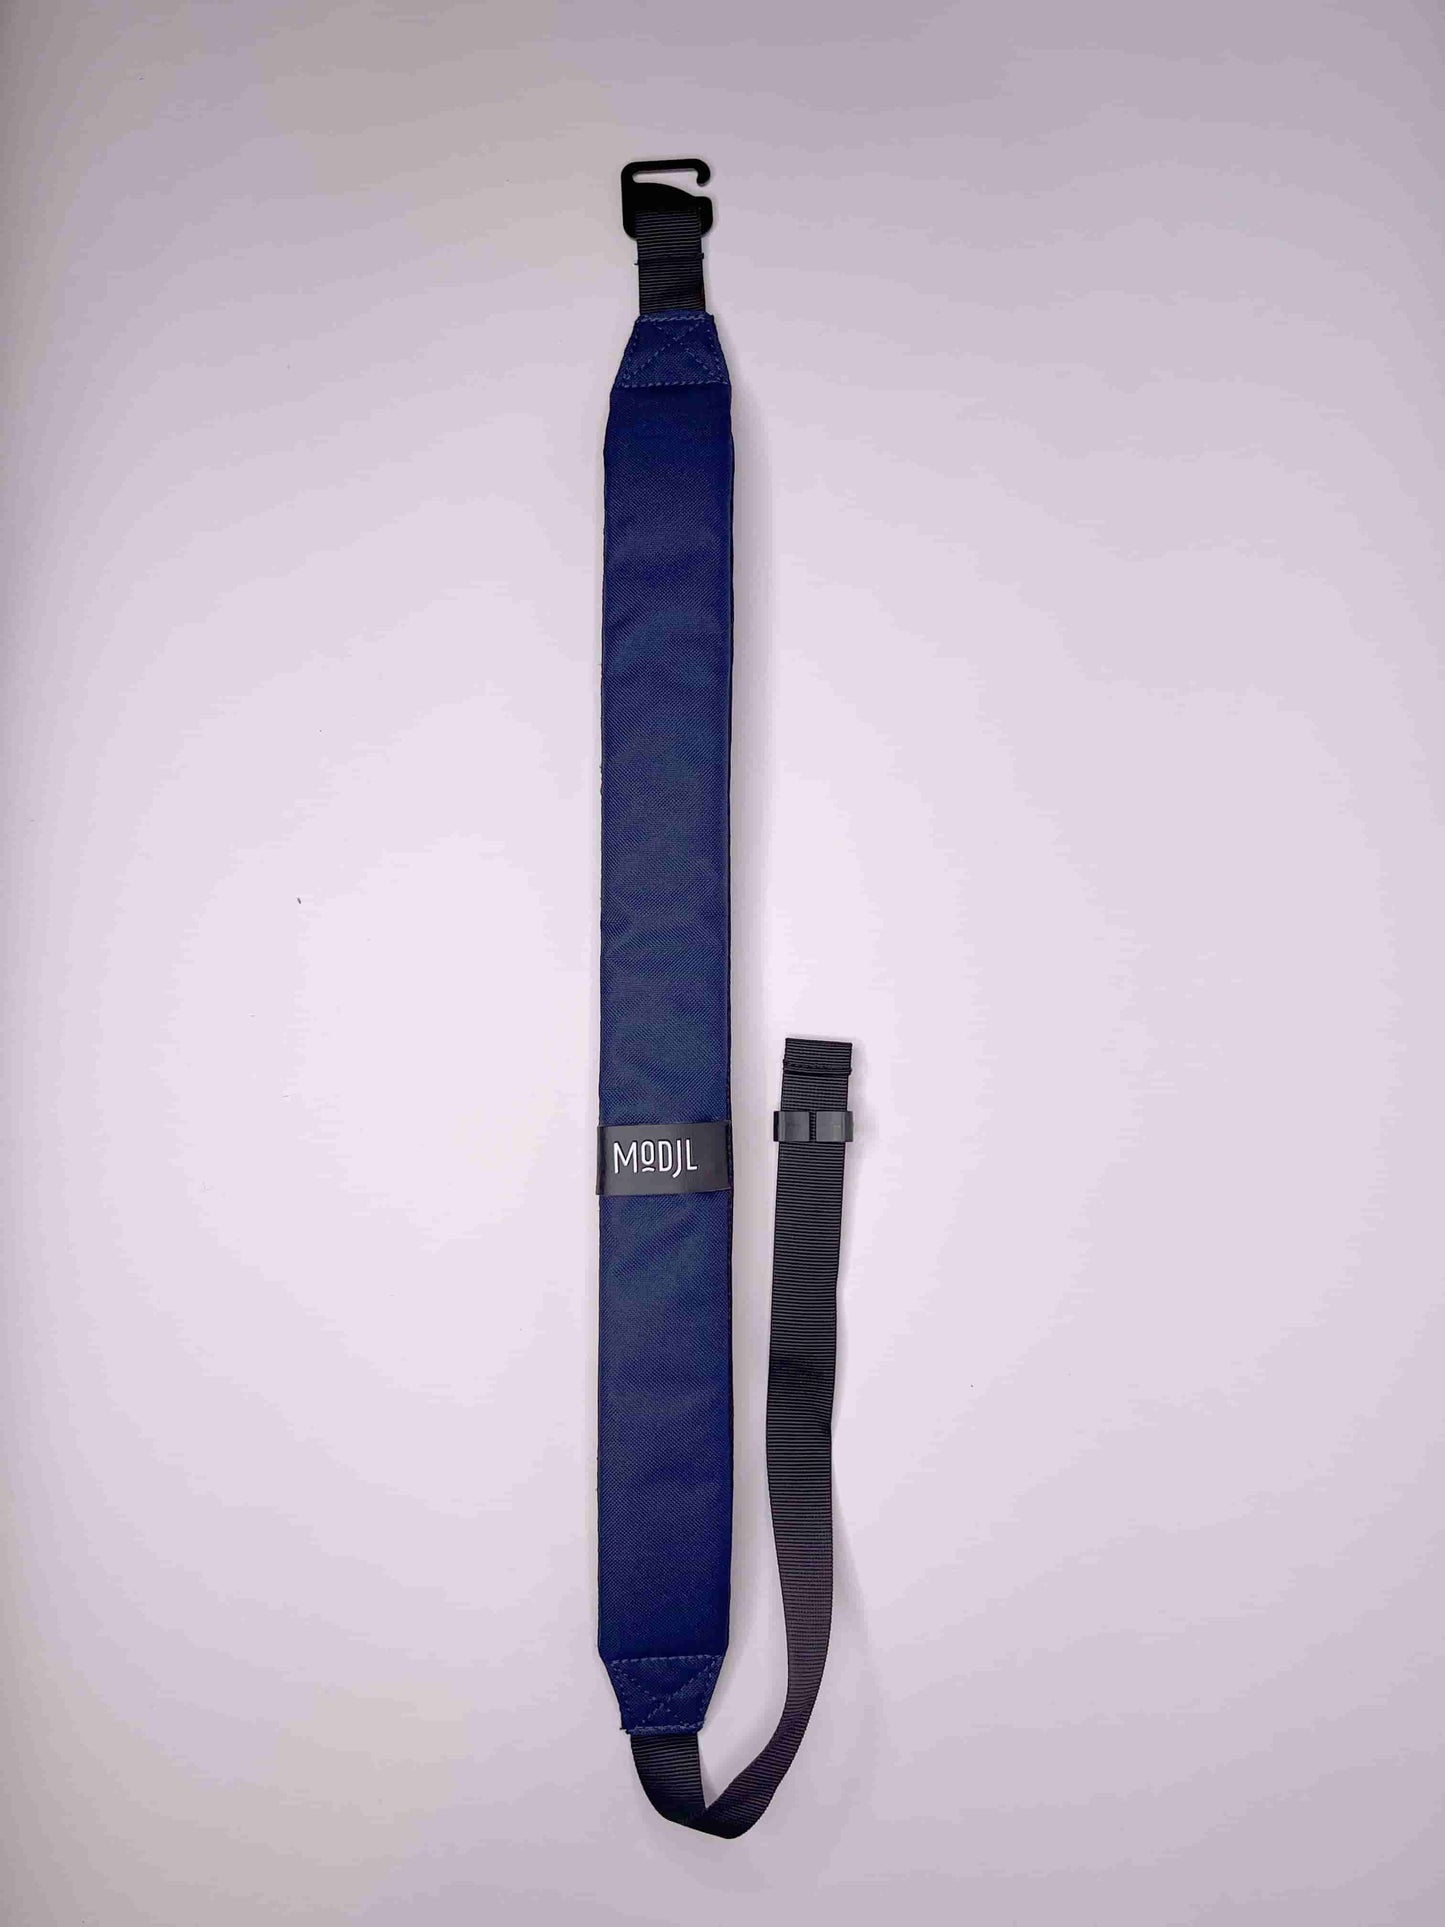 the-shoulder-strap-modjl-modular-backpack-blue